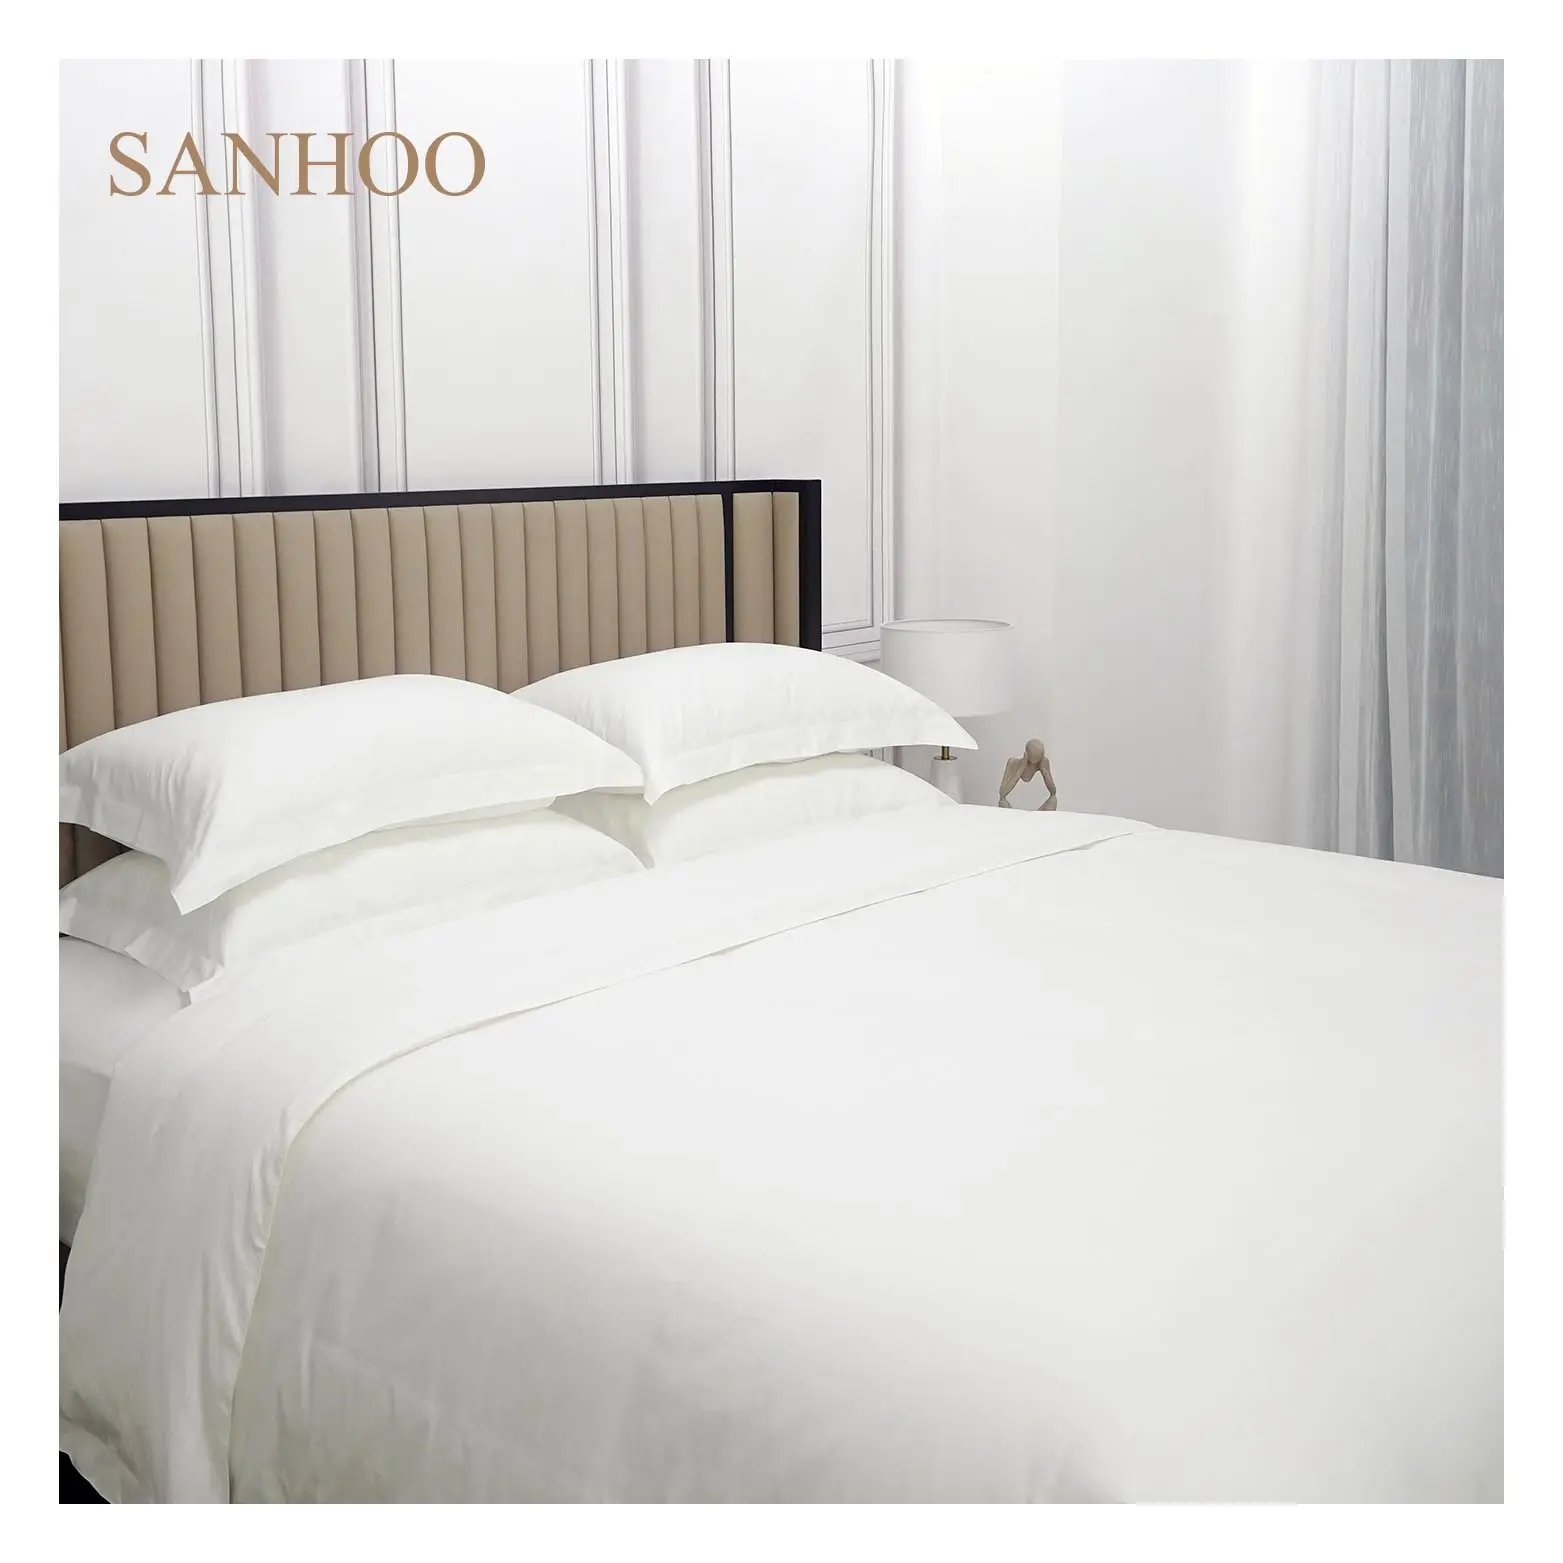 SANHOO – drap de lit en satin peigné 100% coton doux, linge de lit d'hôtel de luxe avec 200 fils